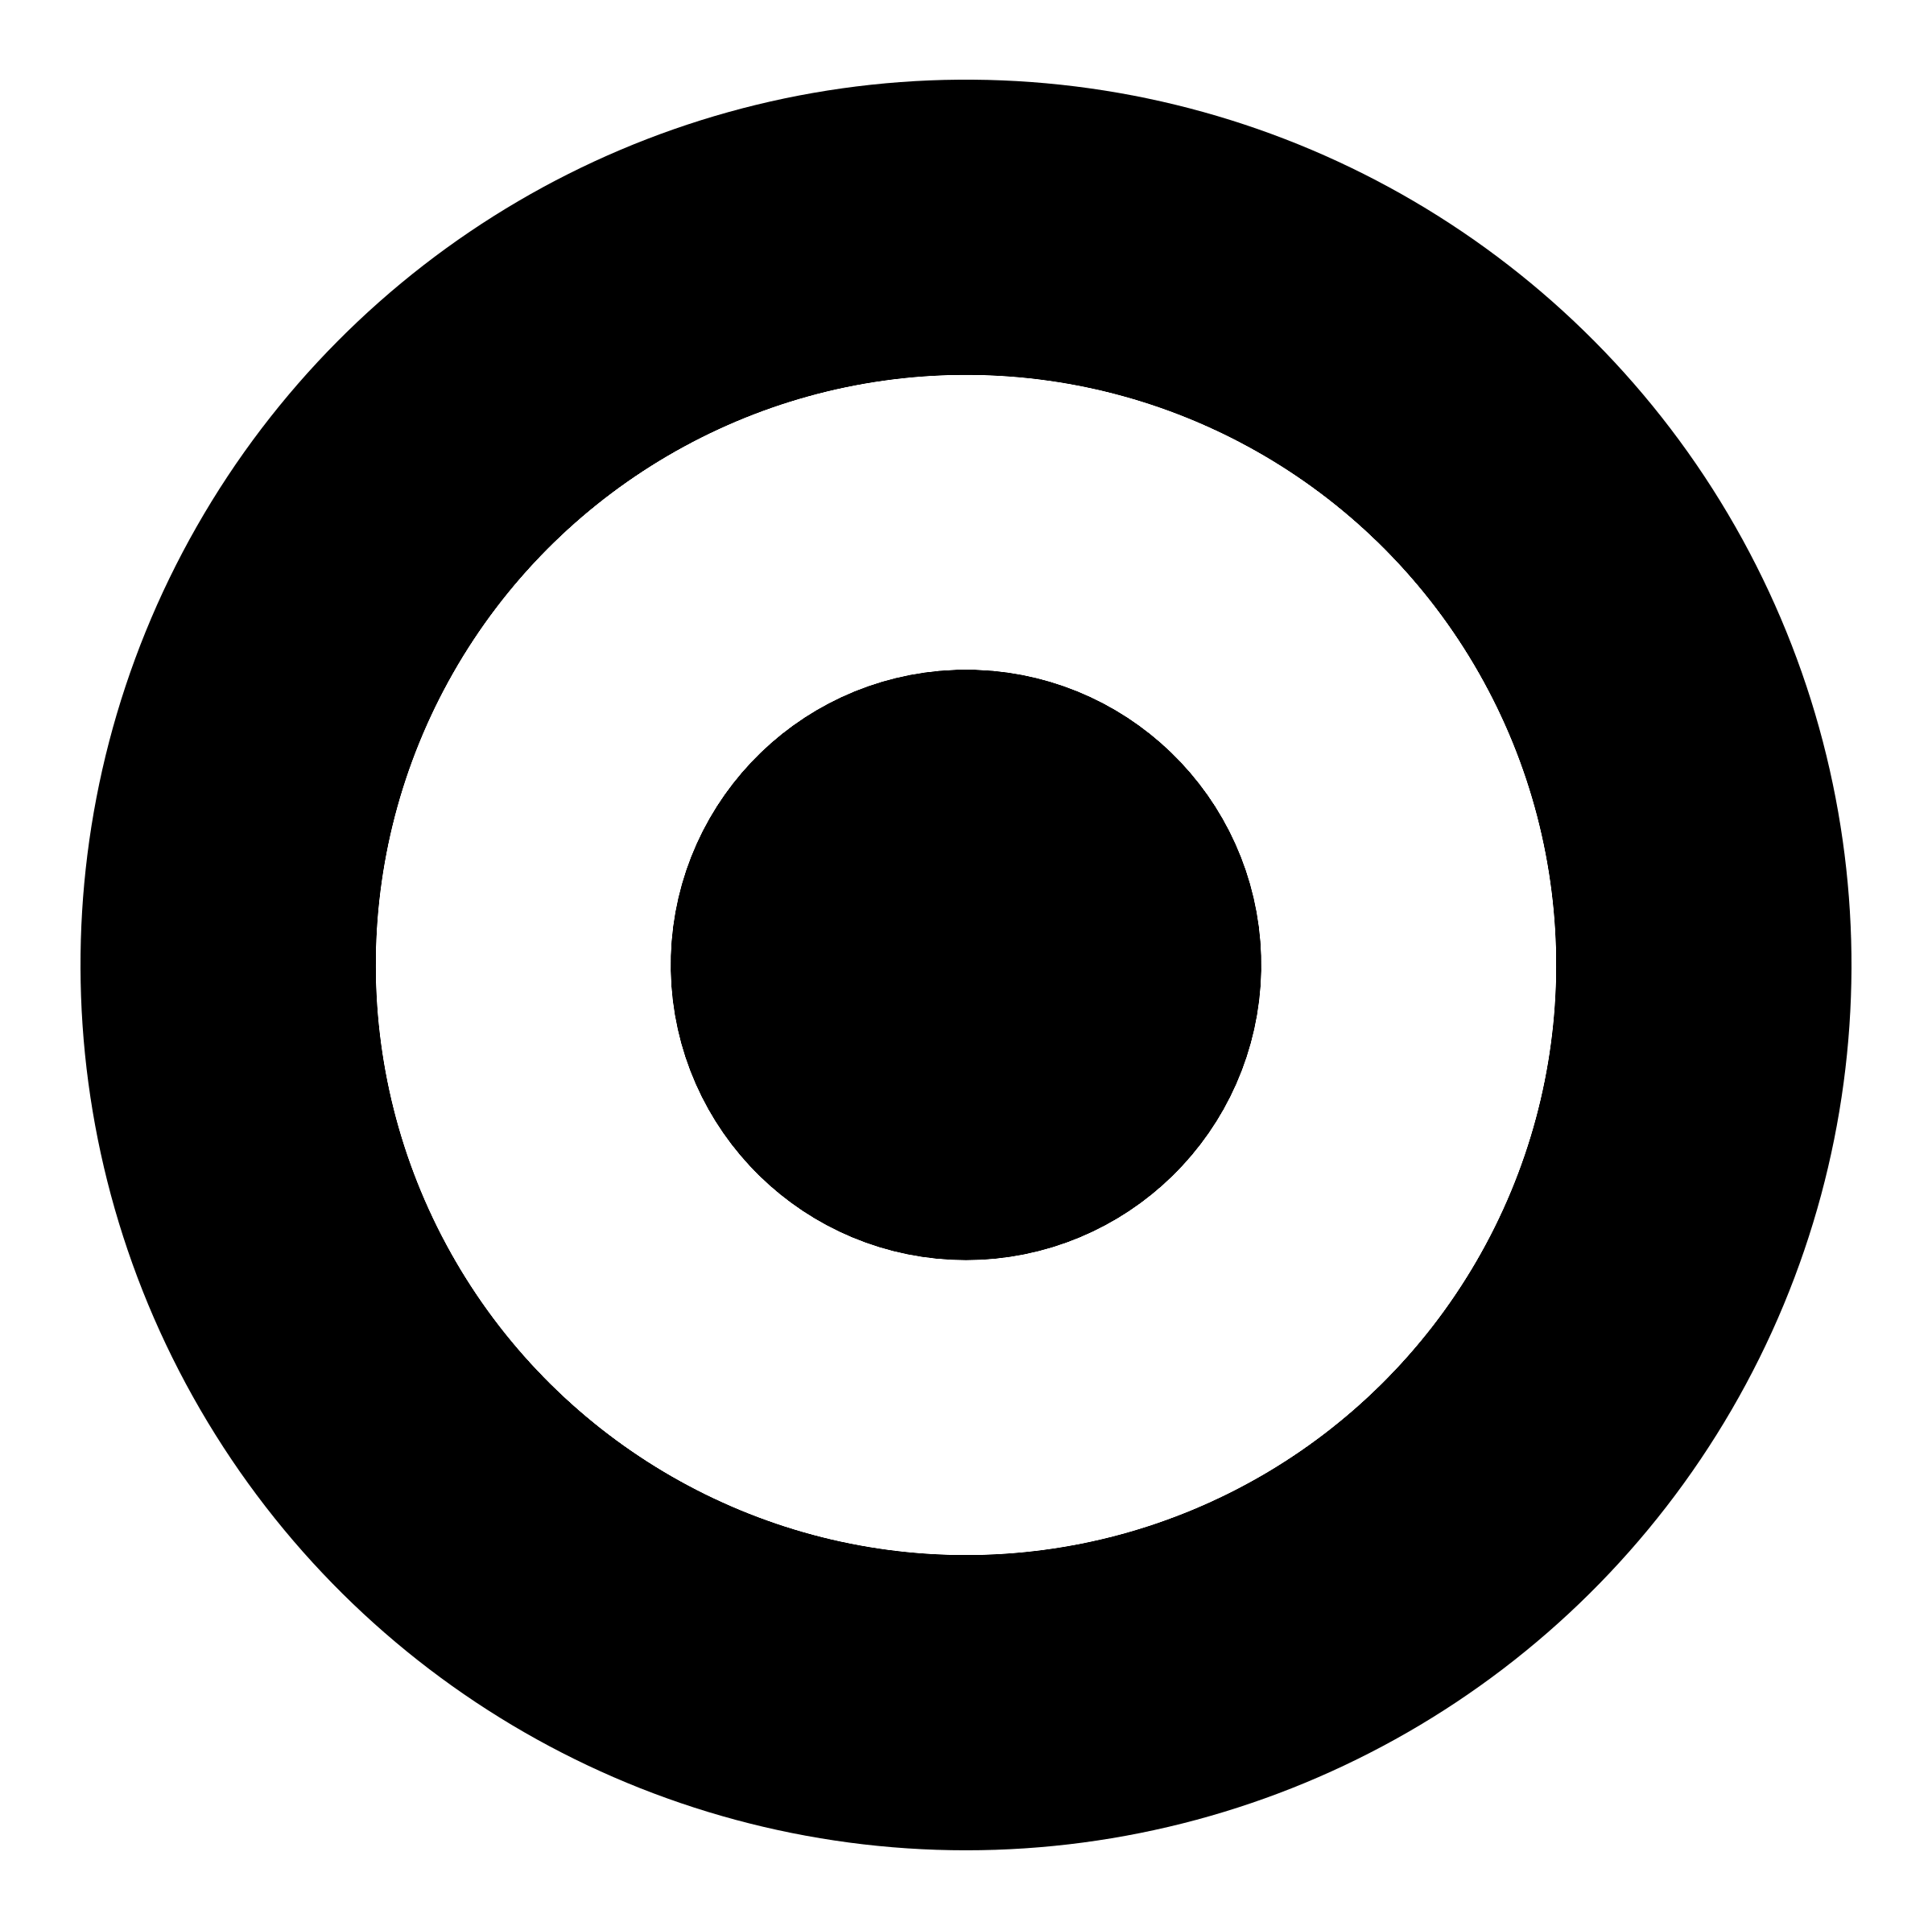 Traget Logo - Target Logo PNG Transparent & SVG Vector